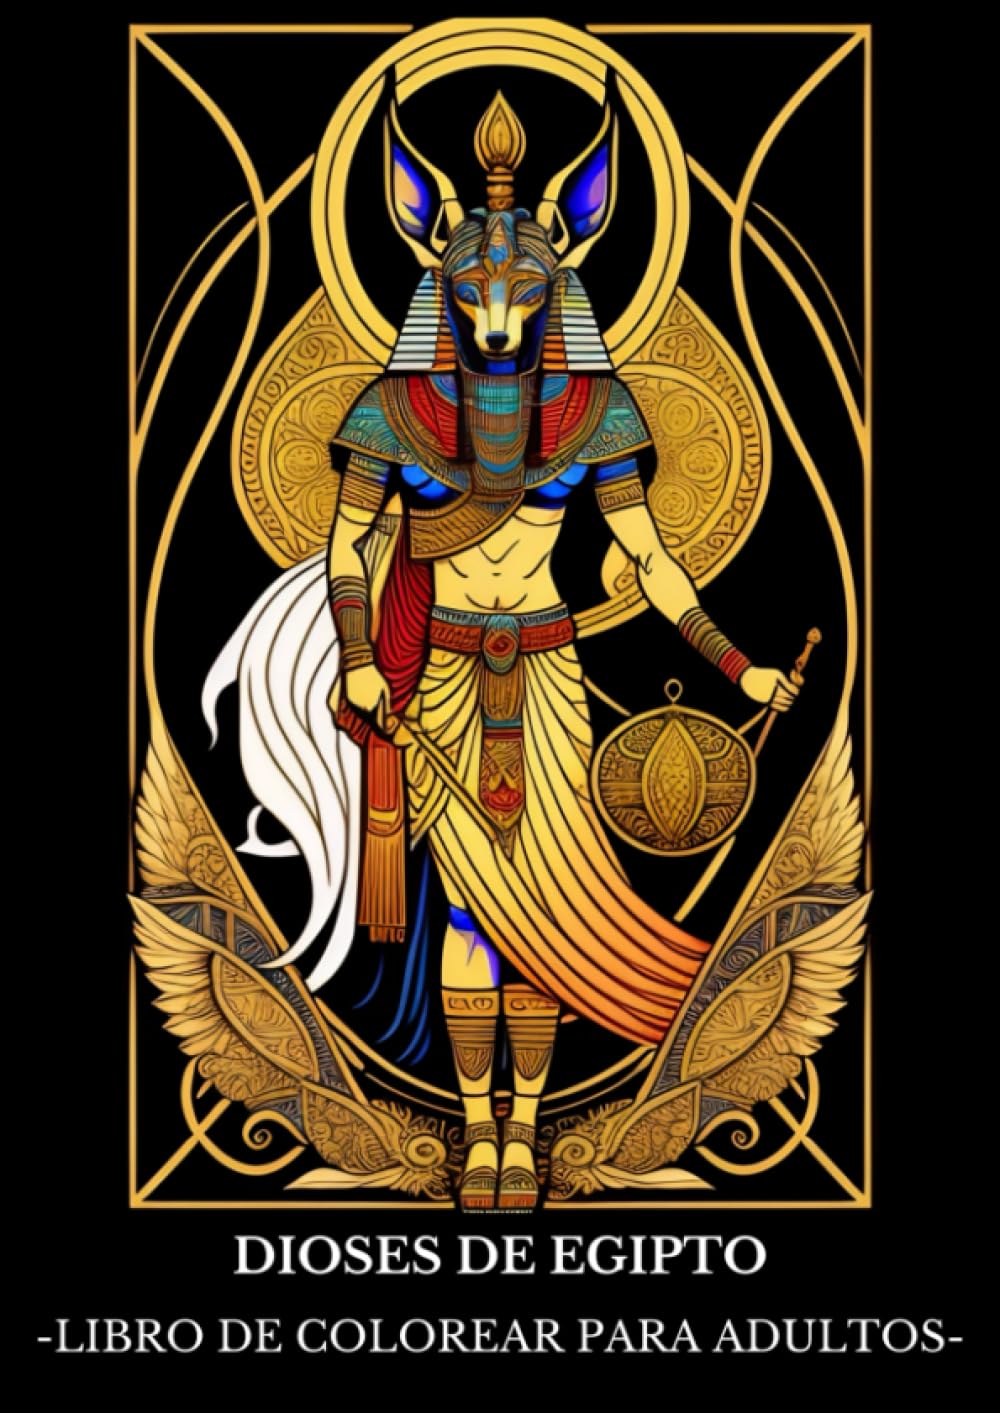 ✅ DIOSES DE EGIPTO: Libro de Colorear para Adultos con Dibujos de Dioses de la Mitología del antiguo Egipto